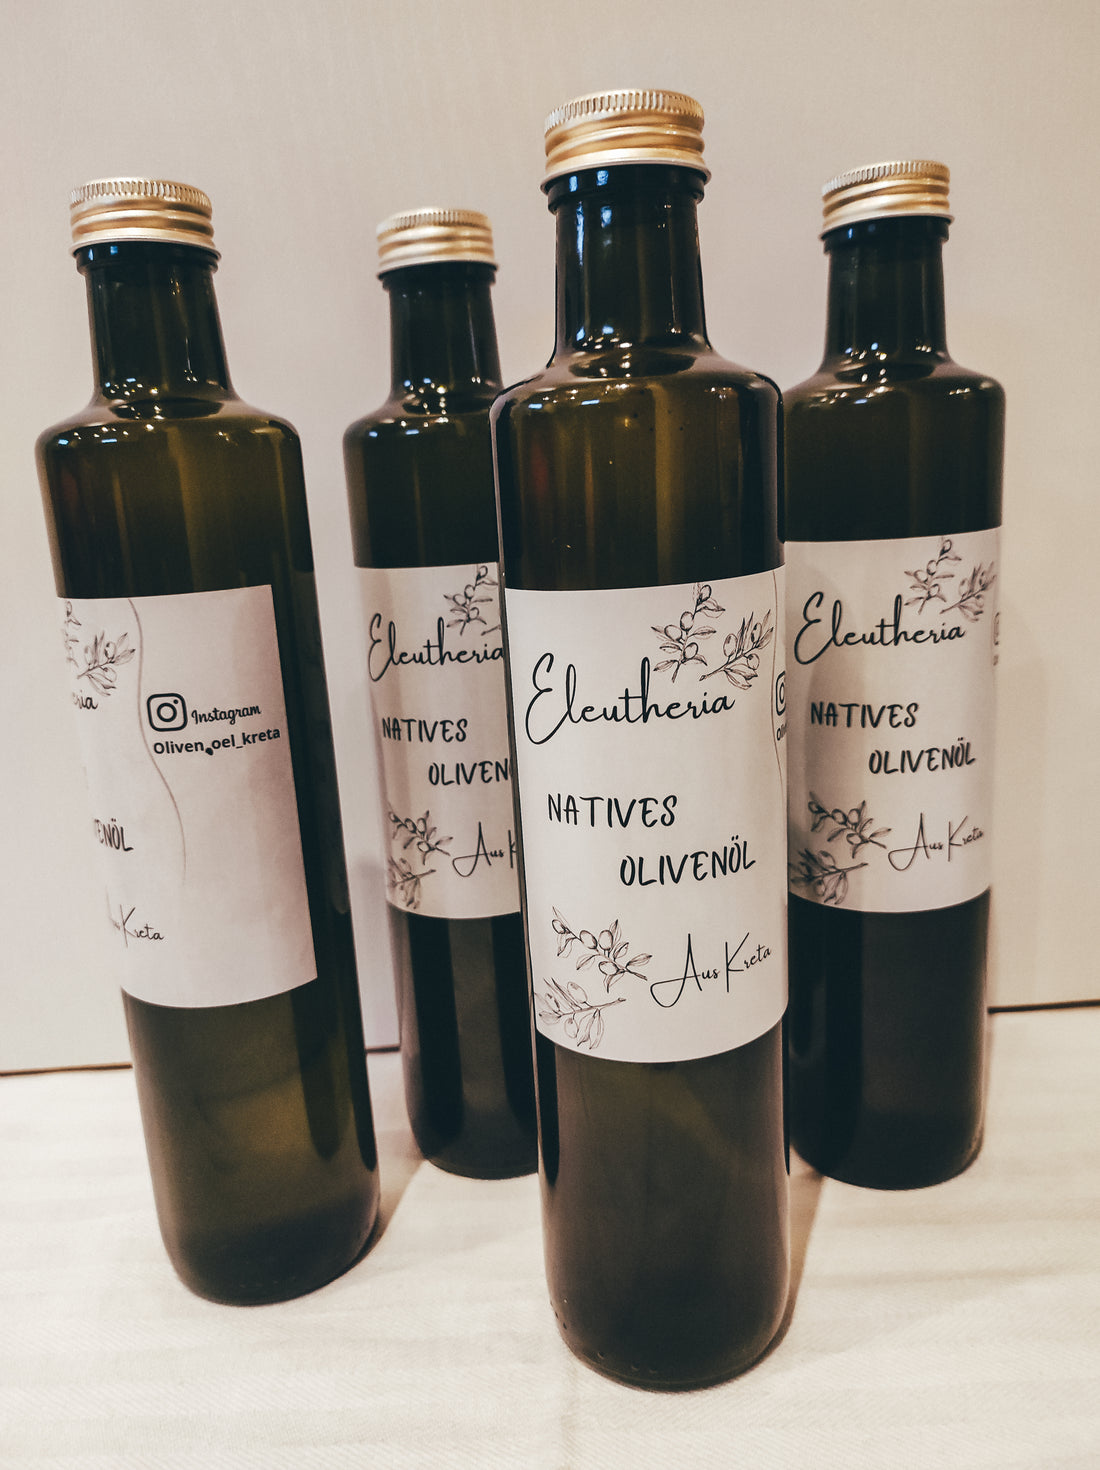 Unser erster Partner: Olivenöl-Hersteller Eleutheria!